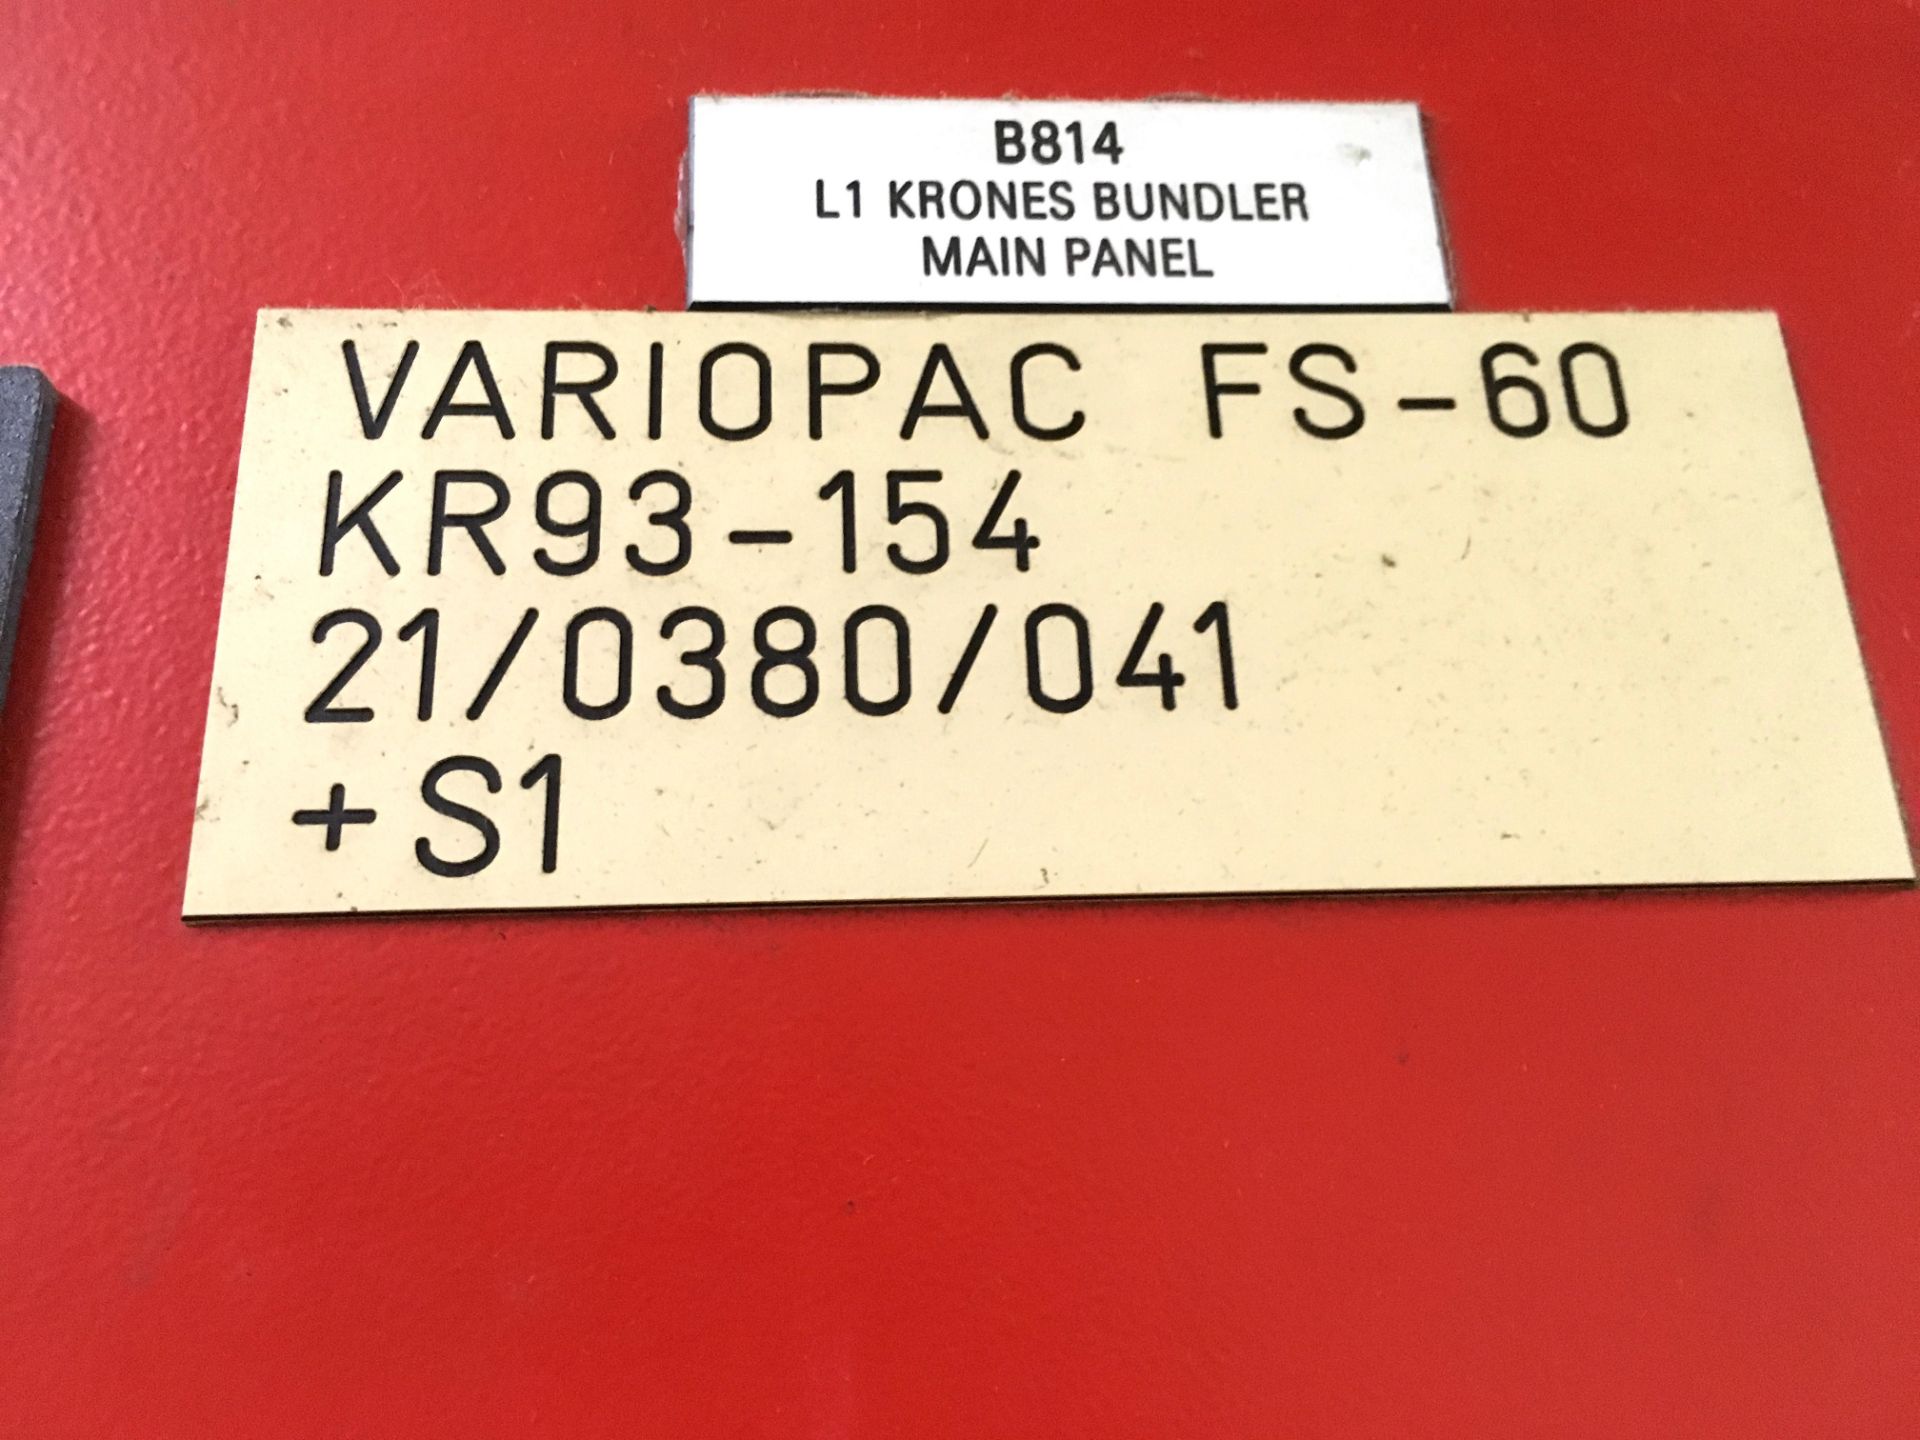 Krones Variopac Packer for Shrinkwrap Film Only Bundles of Bottles, Model FS-60, Last producing dual